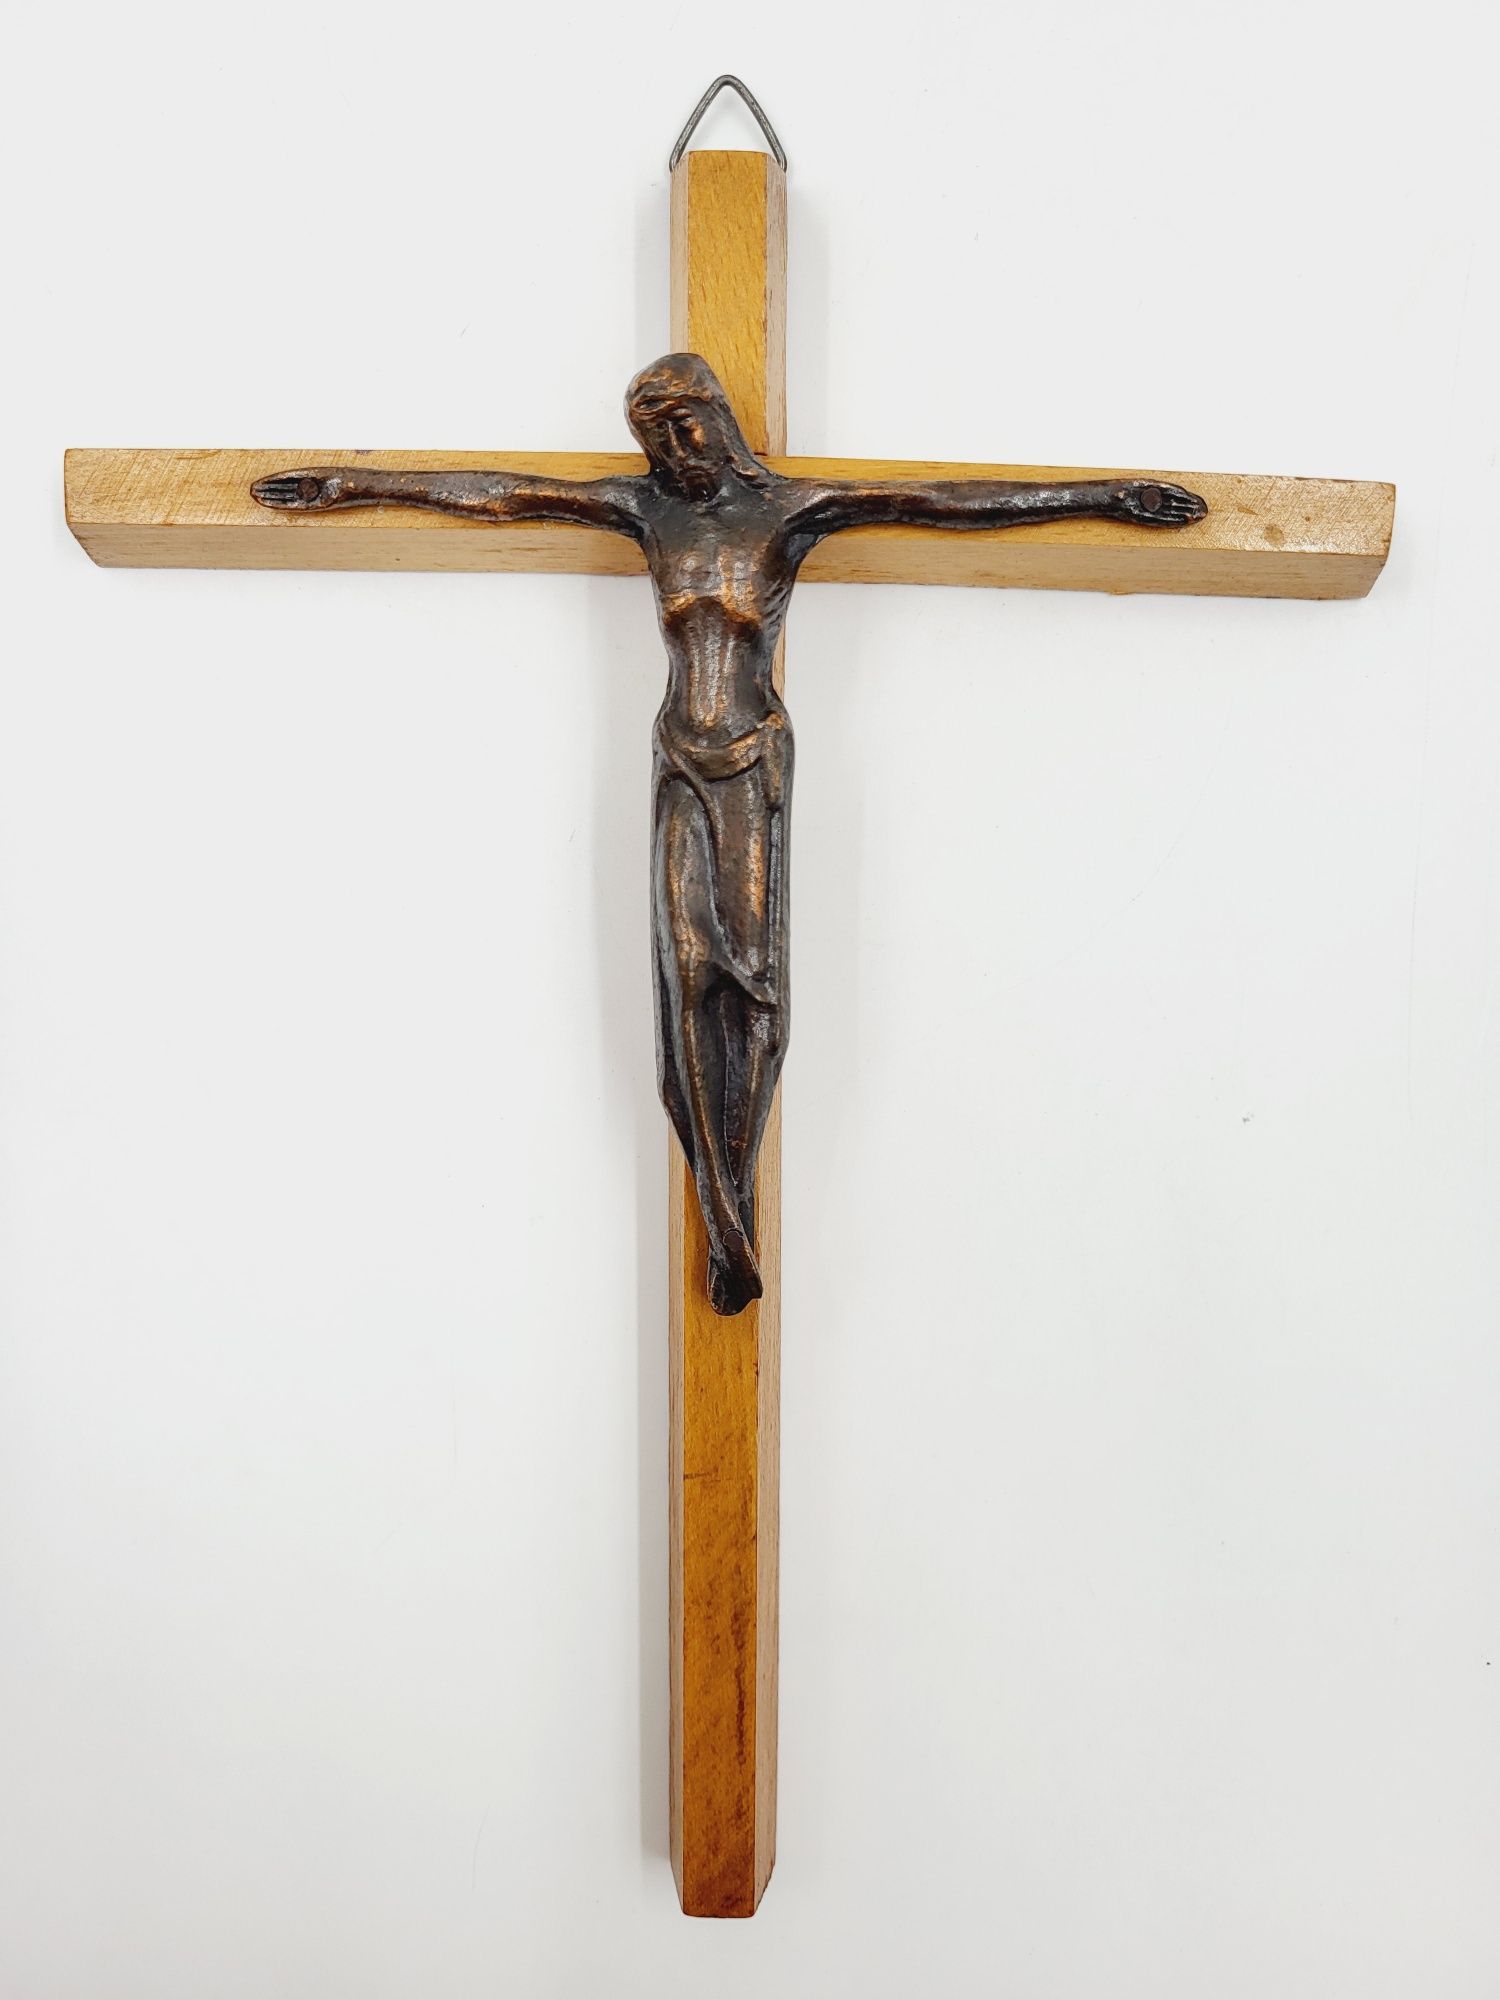 Stary drewniany krzyżyk z miedzianą figurka Jezusa PRL